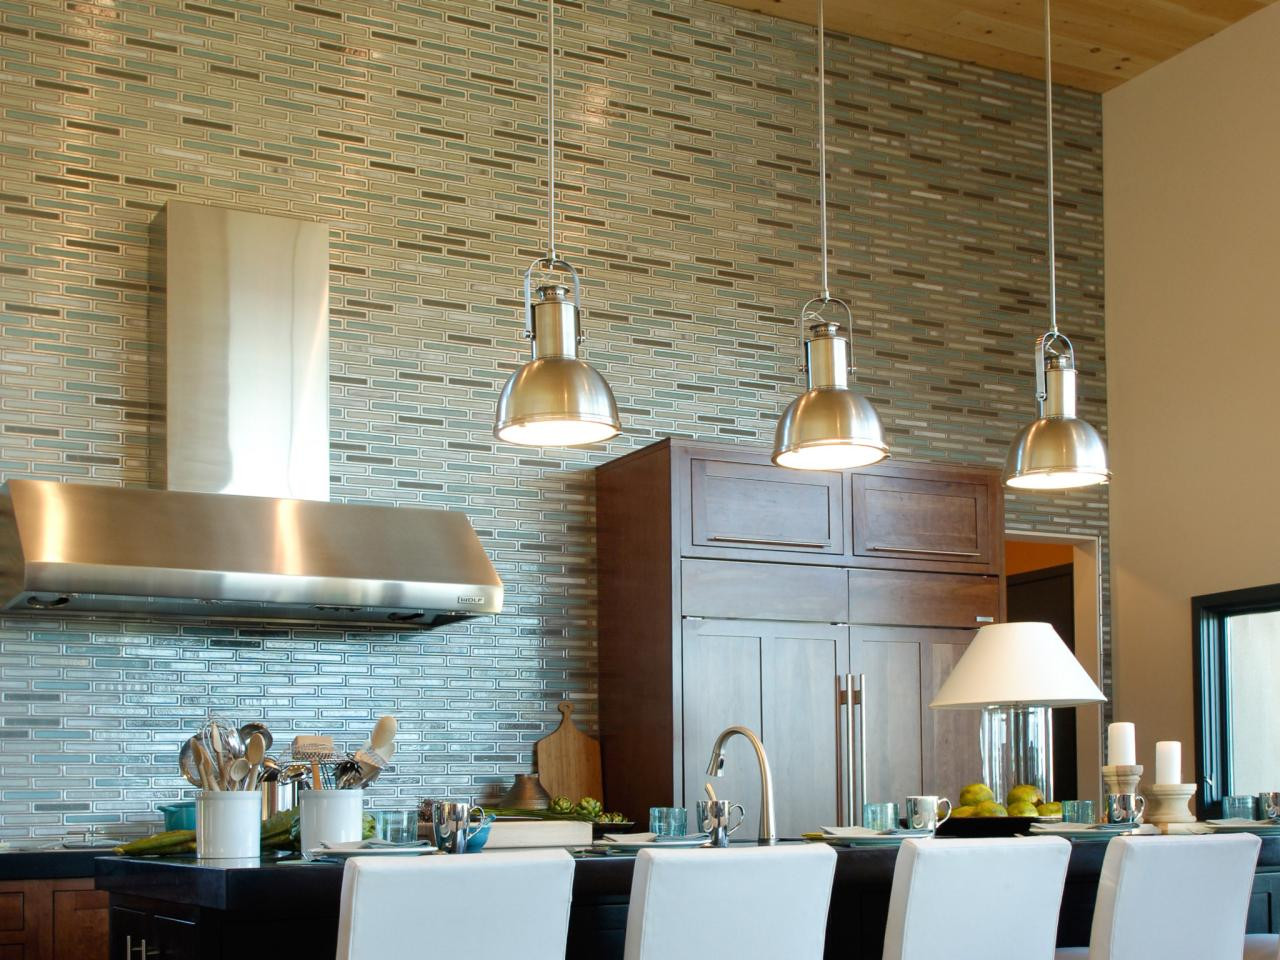 Tile Kitchen Backsplash
 75 Kitchen Backsplash Ideas for 2019 Tile Glass Metal etc